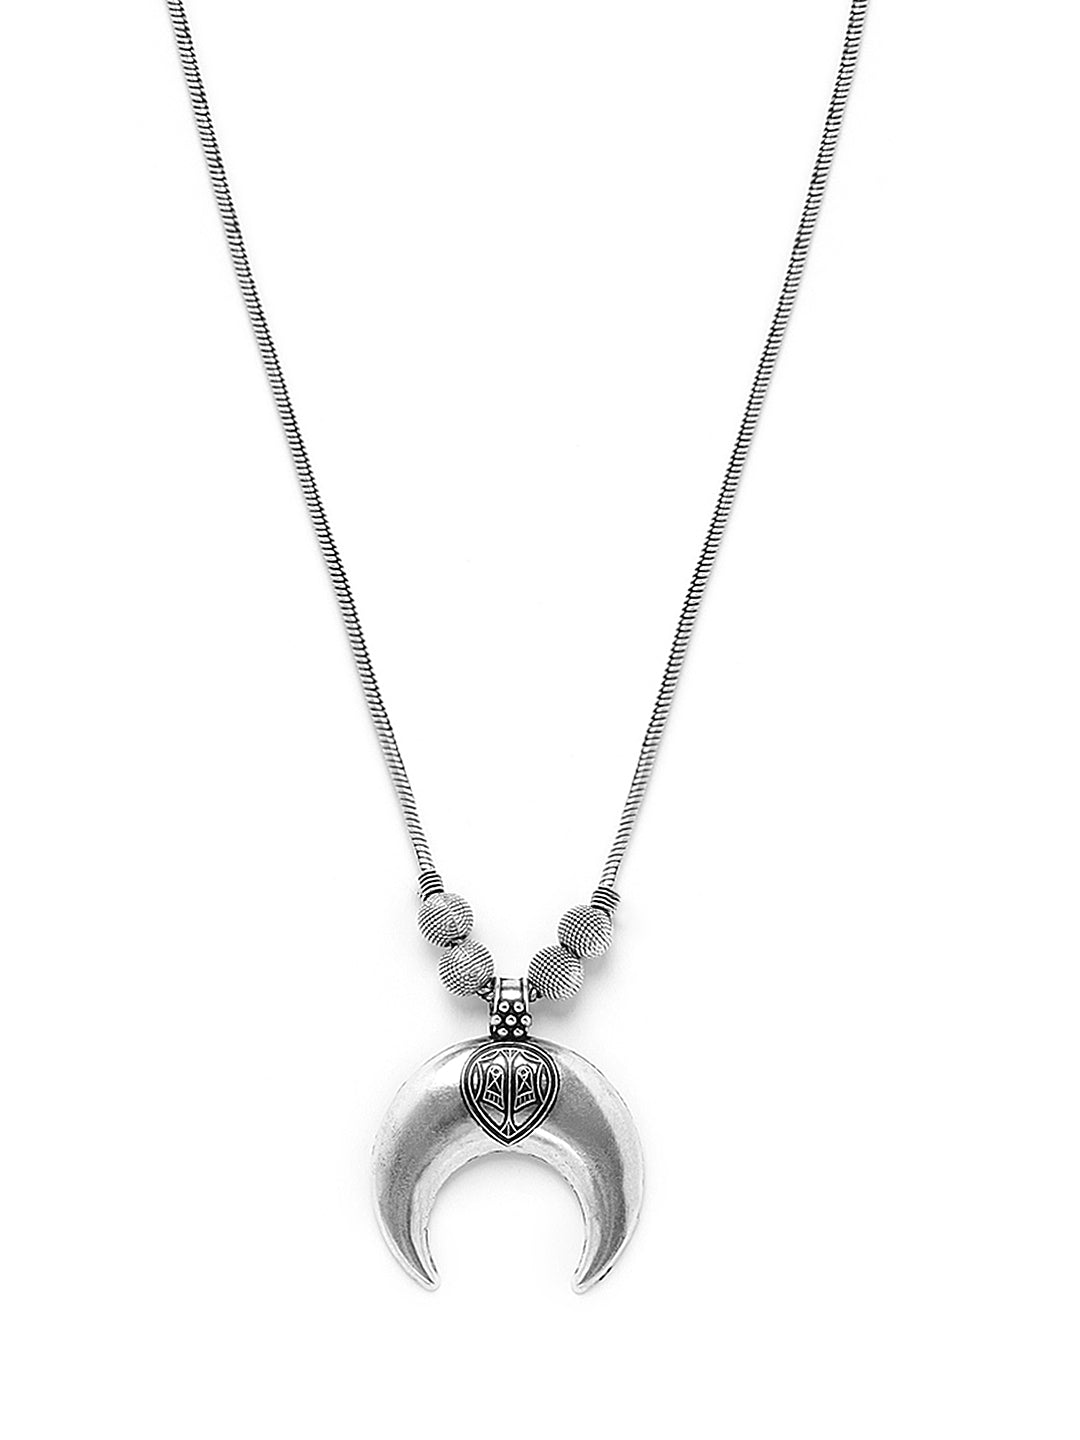 German Silver-Toned Half moon Necklace